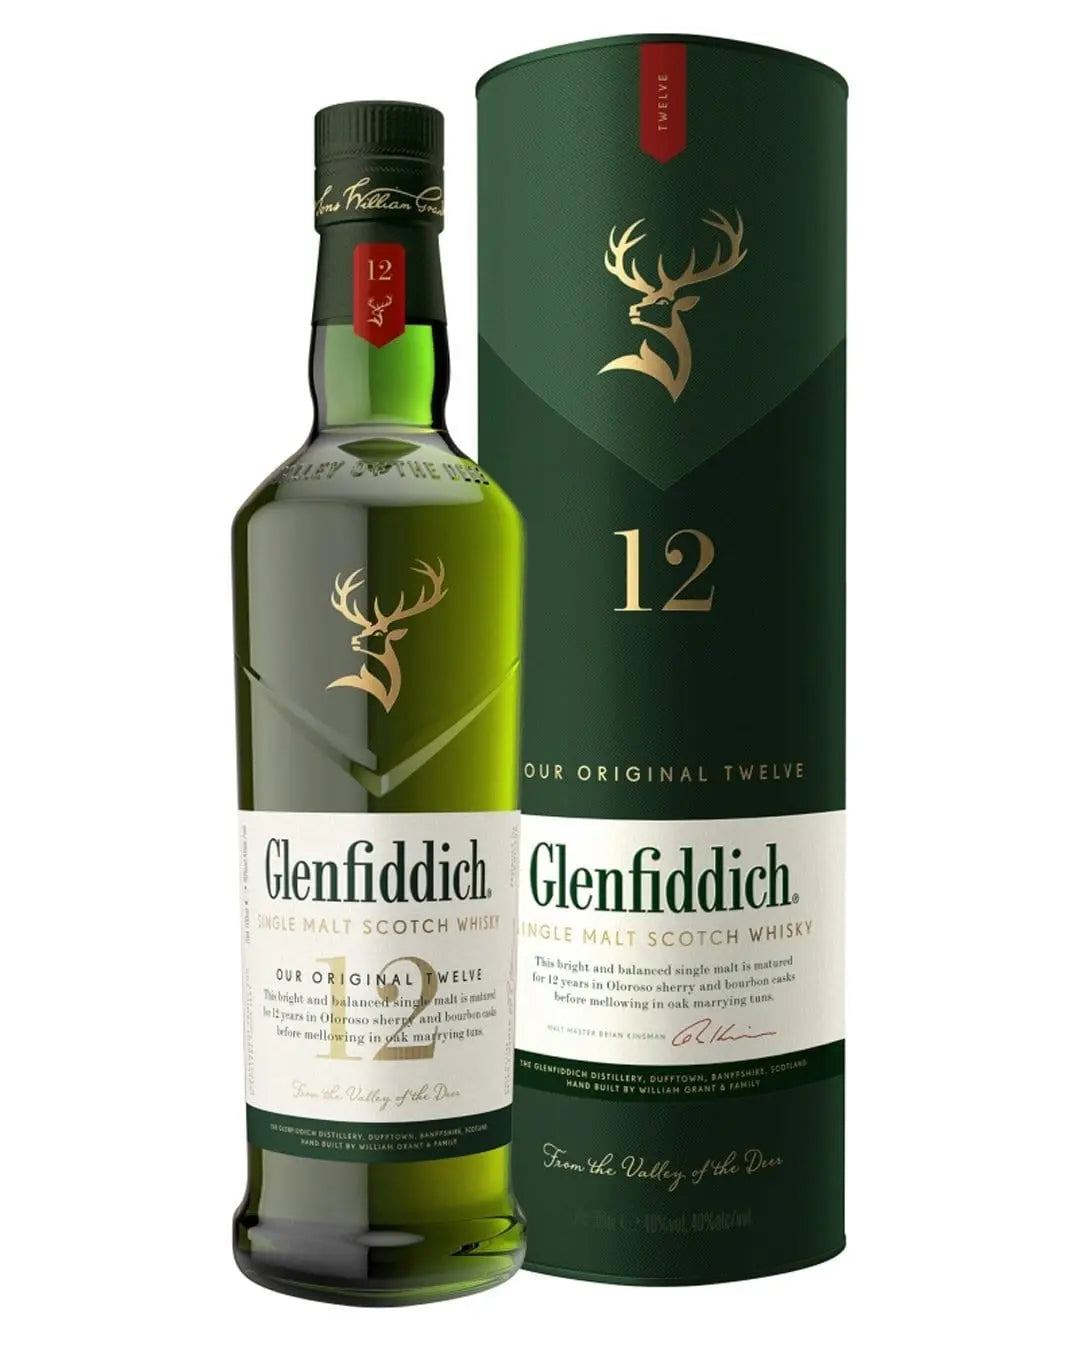 Glenfiddich 12 Year Old Single Malt Scotch Whisky, 70 cl Whisky 5010327000176